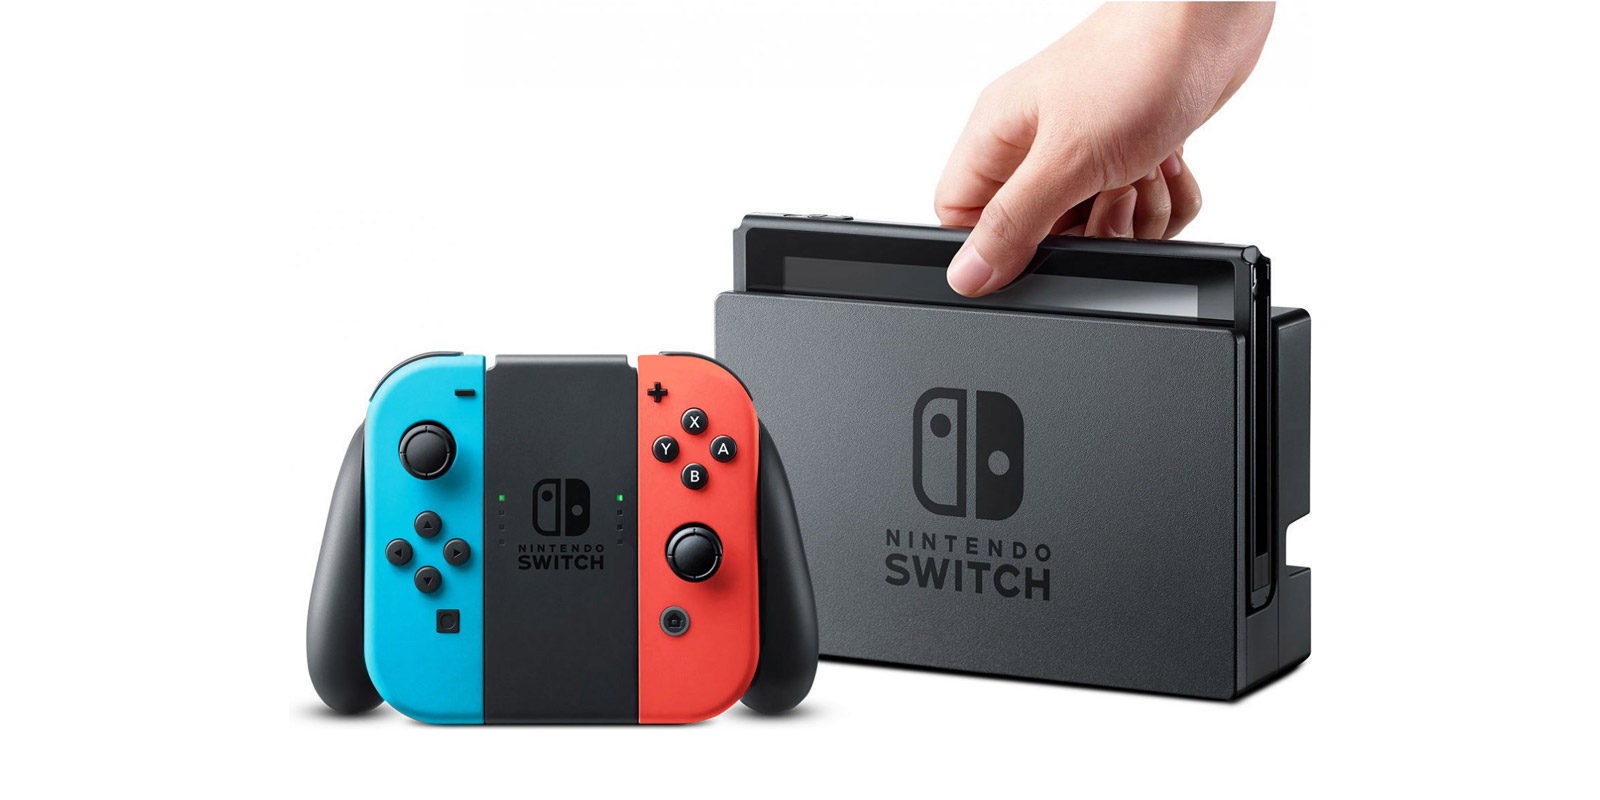 Nintendo Switch dobla en ventas a Wii U en su semana de lanzamiento en Reino Unido